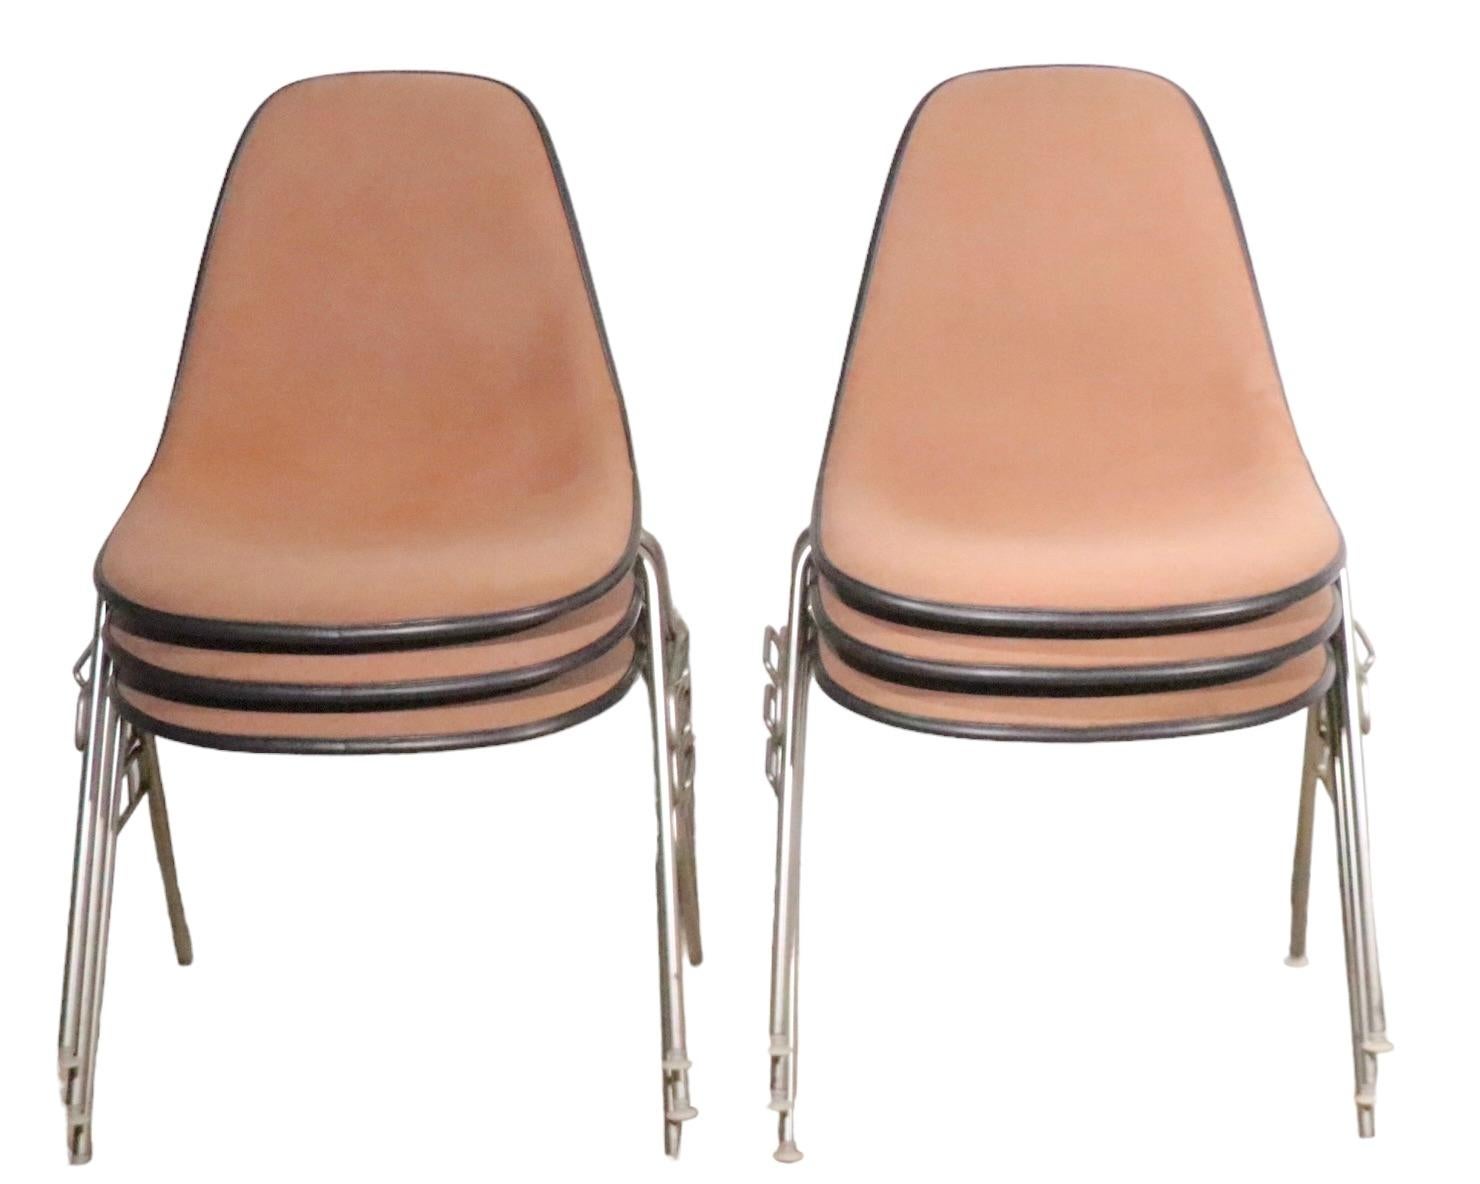 Ensemble de six chaises empilables DSS, conçues par les Eames, pour Herman Miller, avec un revêtement en tweed beige/argile,   coques en fibre de verre gris foncé et pieds en métal. Tous sont en très bon état d'origine et ne présentent qu'une légère